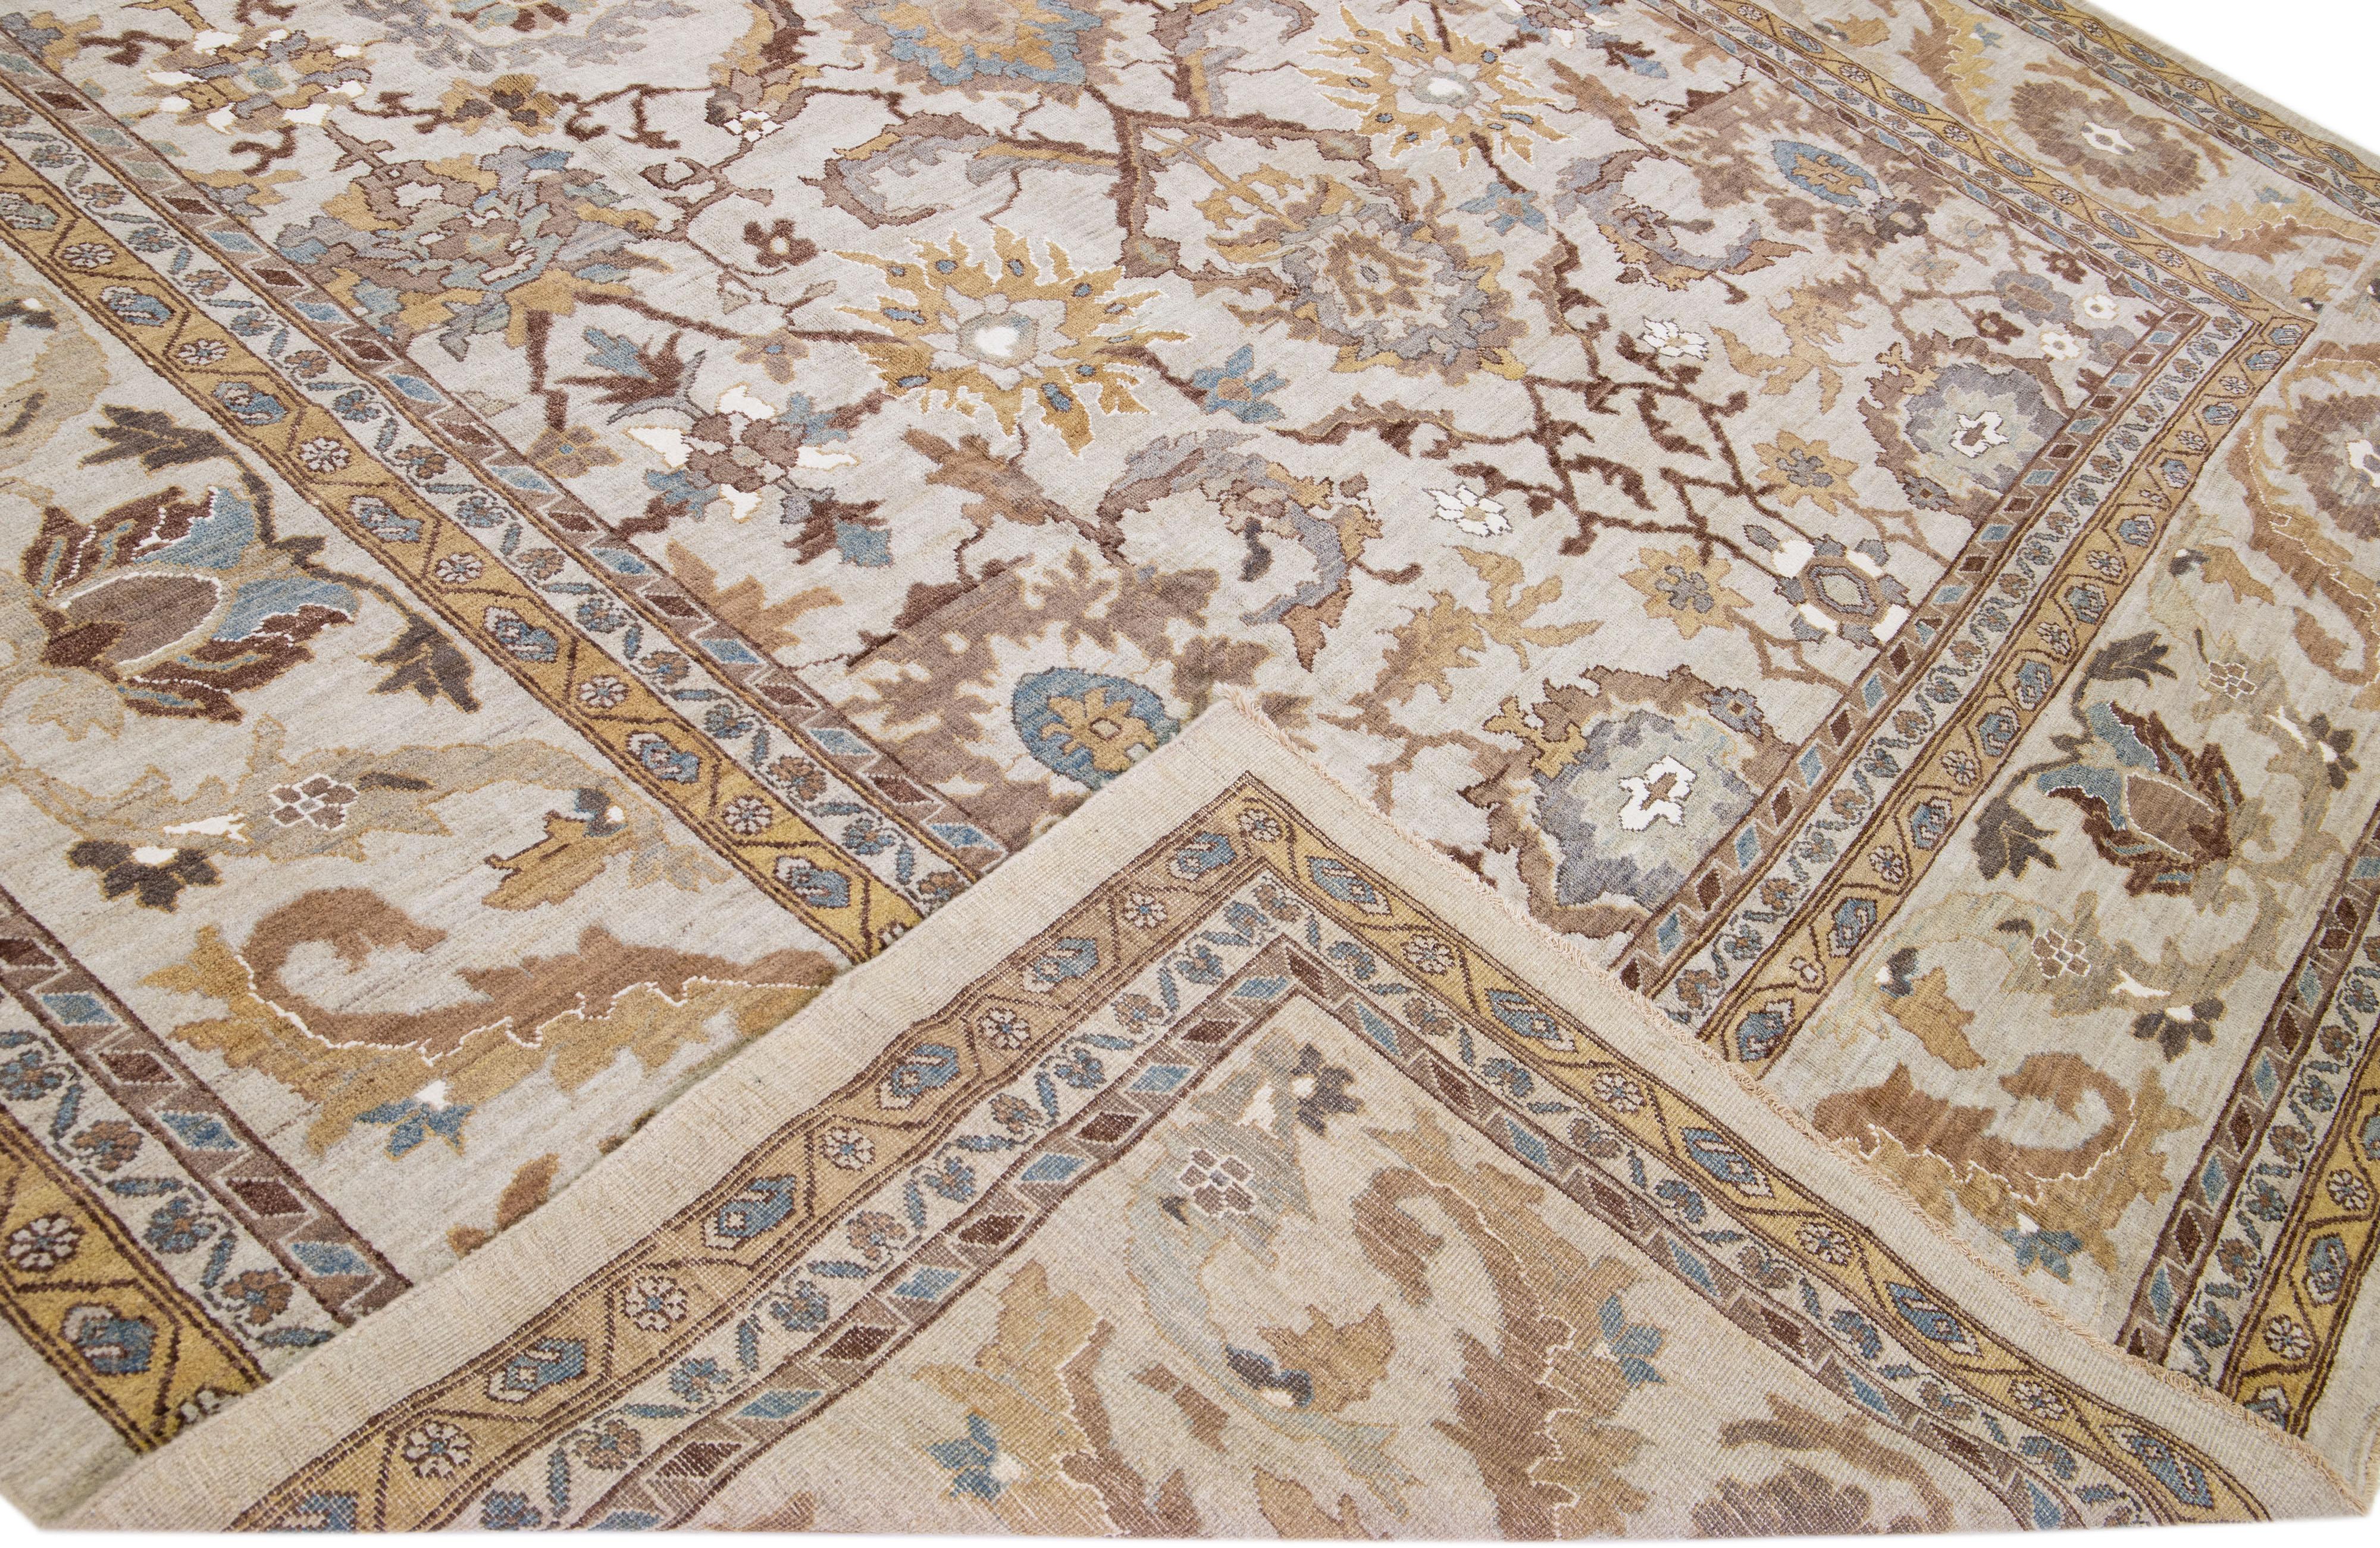 Magnifique tapis moderne Sultanabad en laine nouée à la main avec un champ de couleur beige. Ce tapis présente des accents bleus, bruns et gris dans un magnifique motif floral.

Ce tapis mesure : 13'2